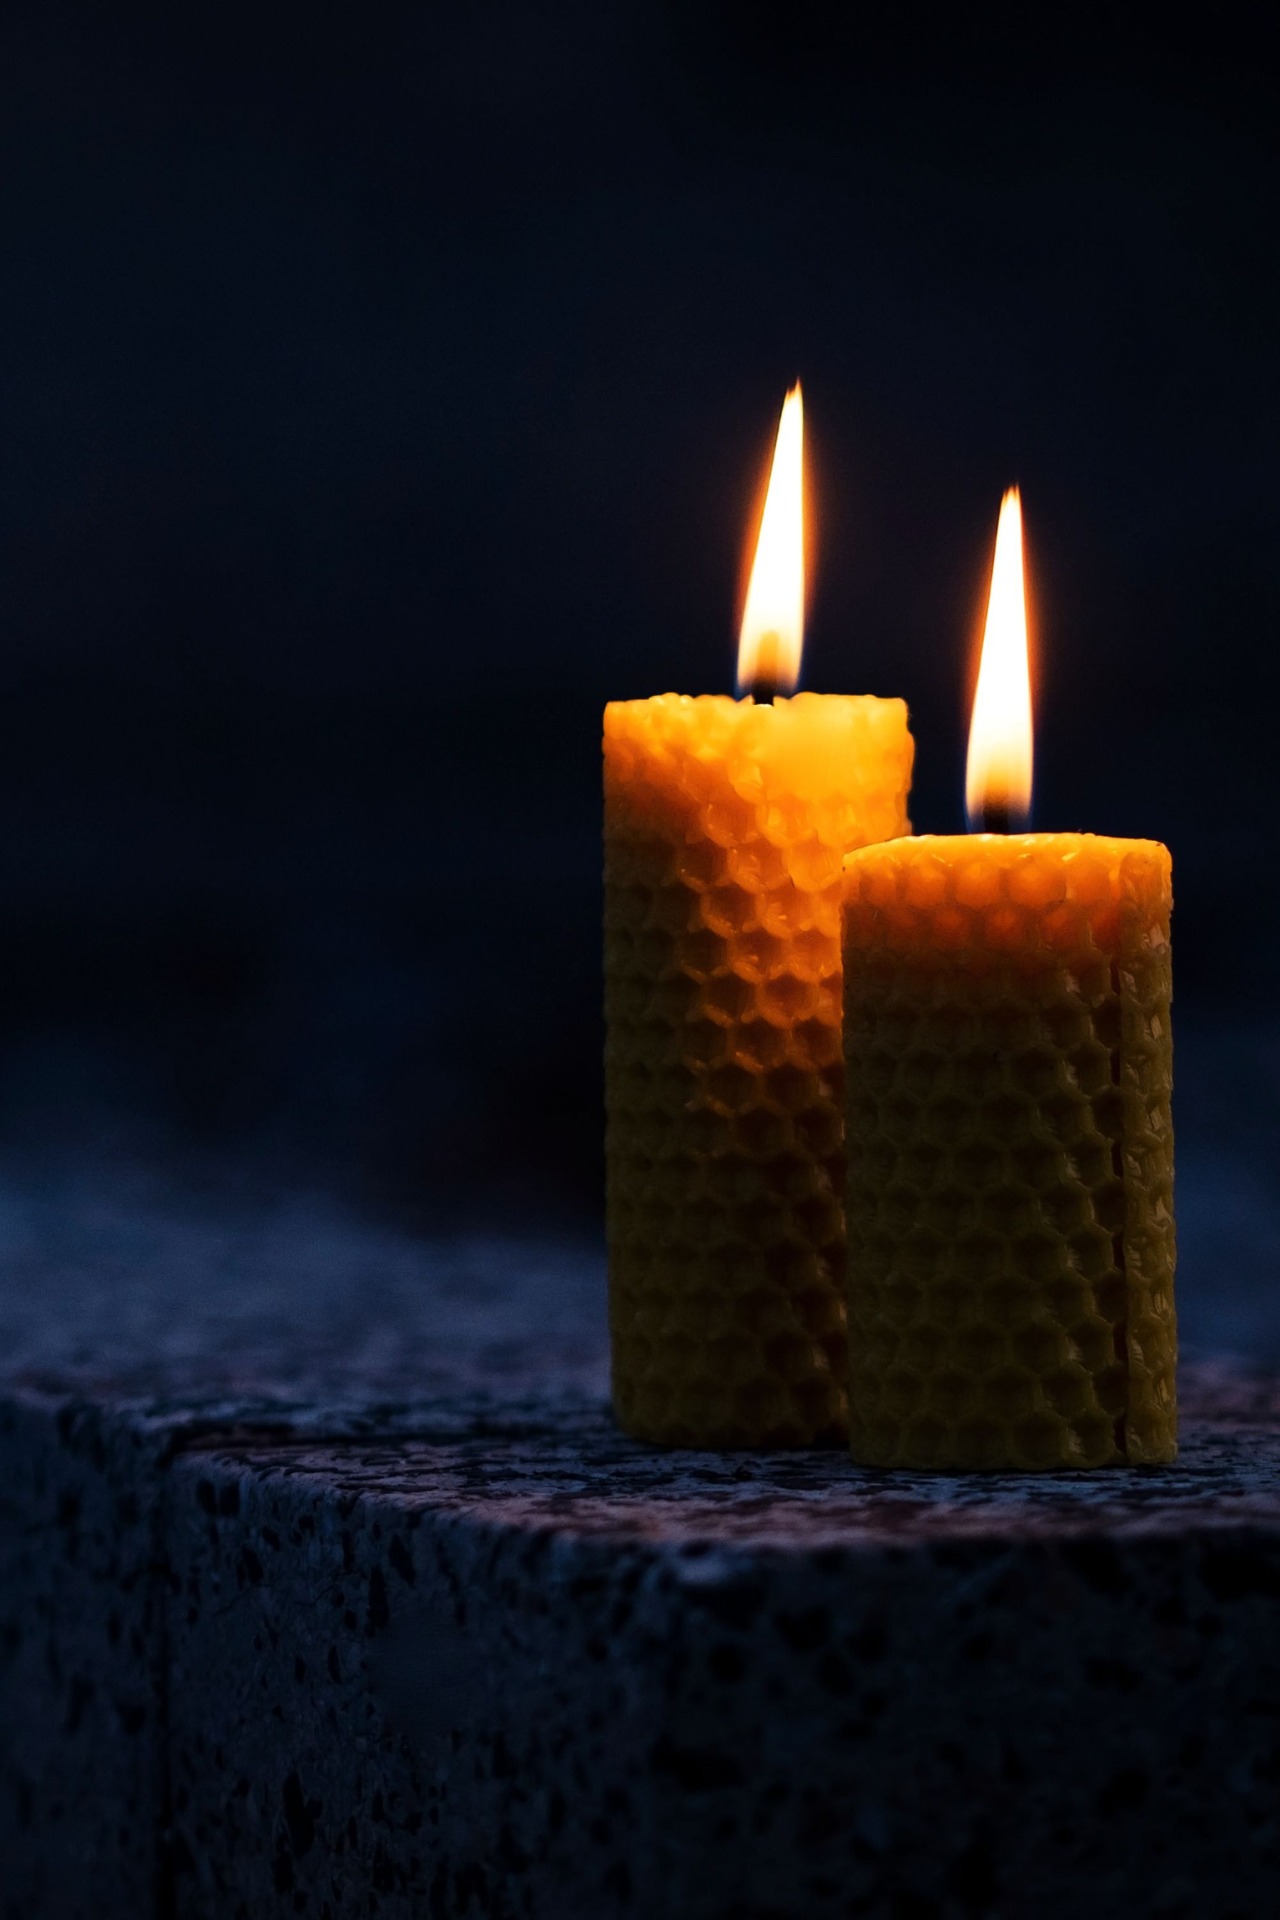 Les bougies piliers - Les formules de cire •